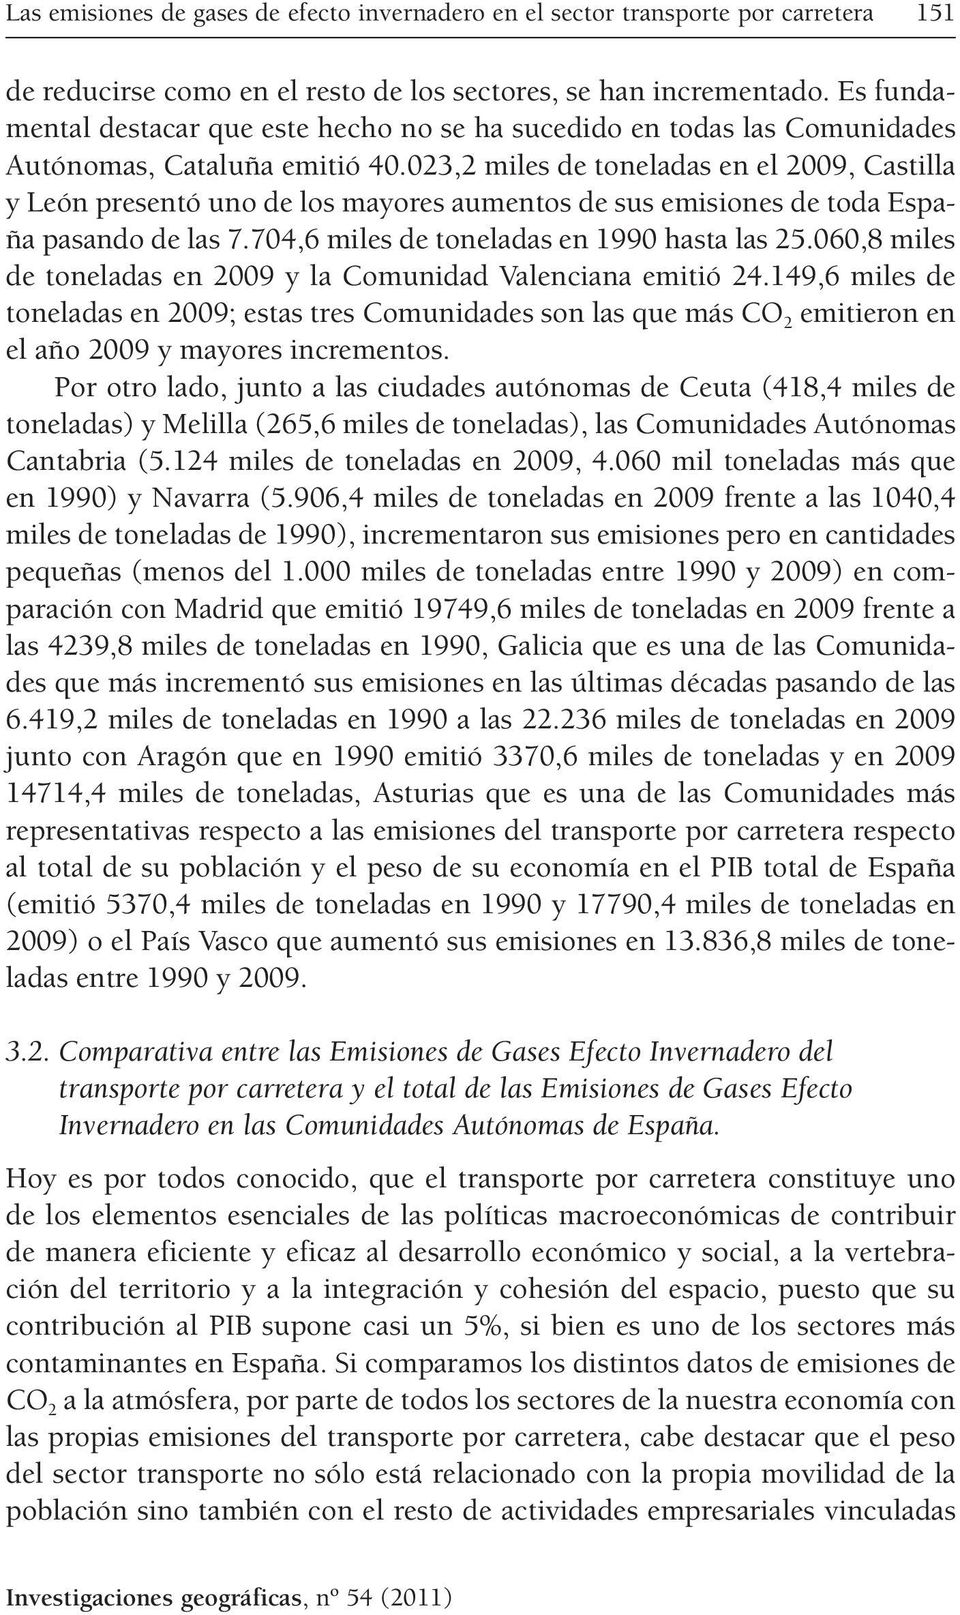 023,2 miles de toneladas en el 2009, Castilla y León presentó uno de los mayores aumentos de sus emisiones de toda España pasando de las 7.704,6 miles de toneladas en 1990 hasta las 25.